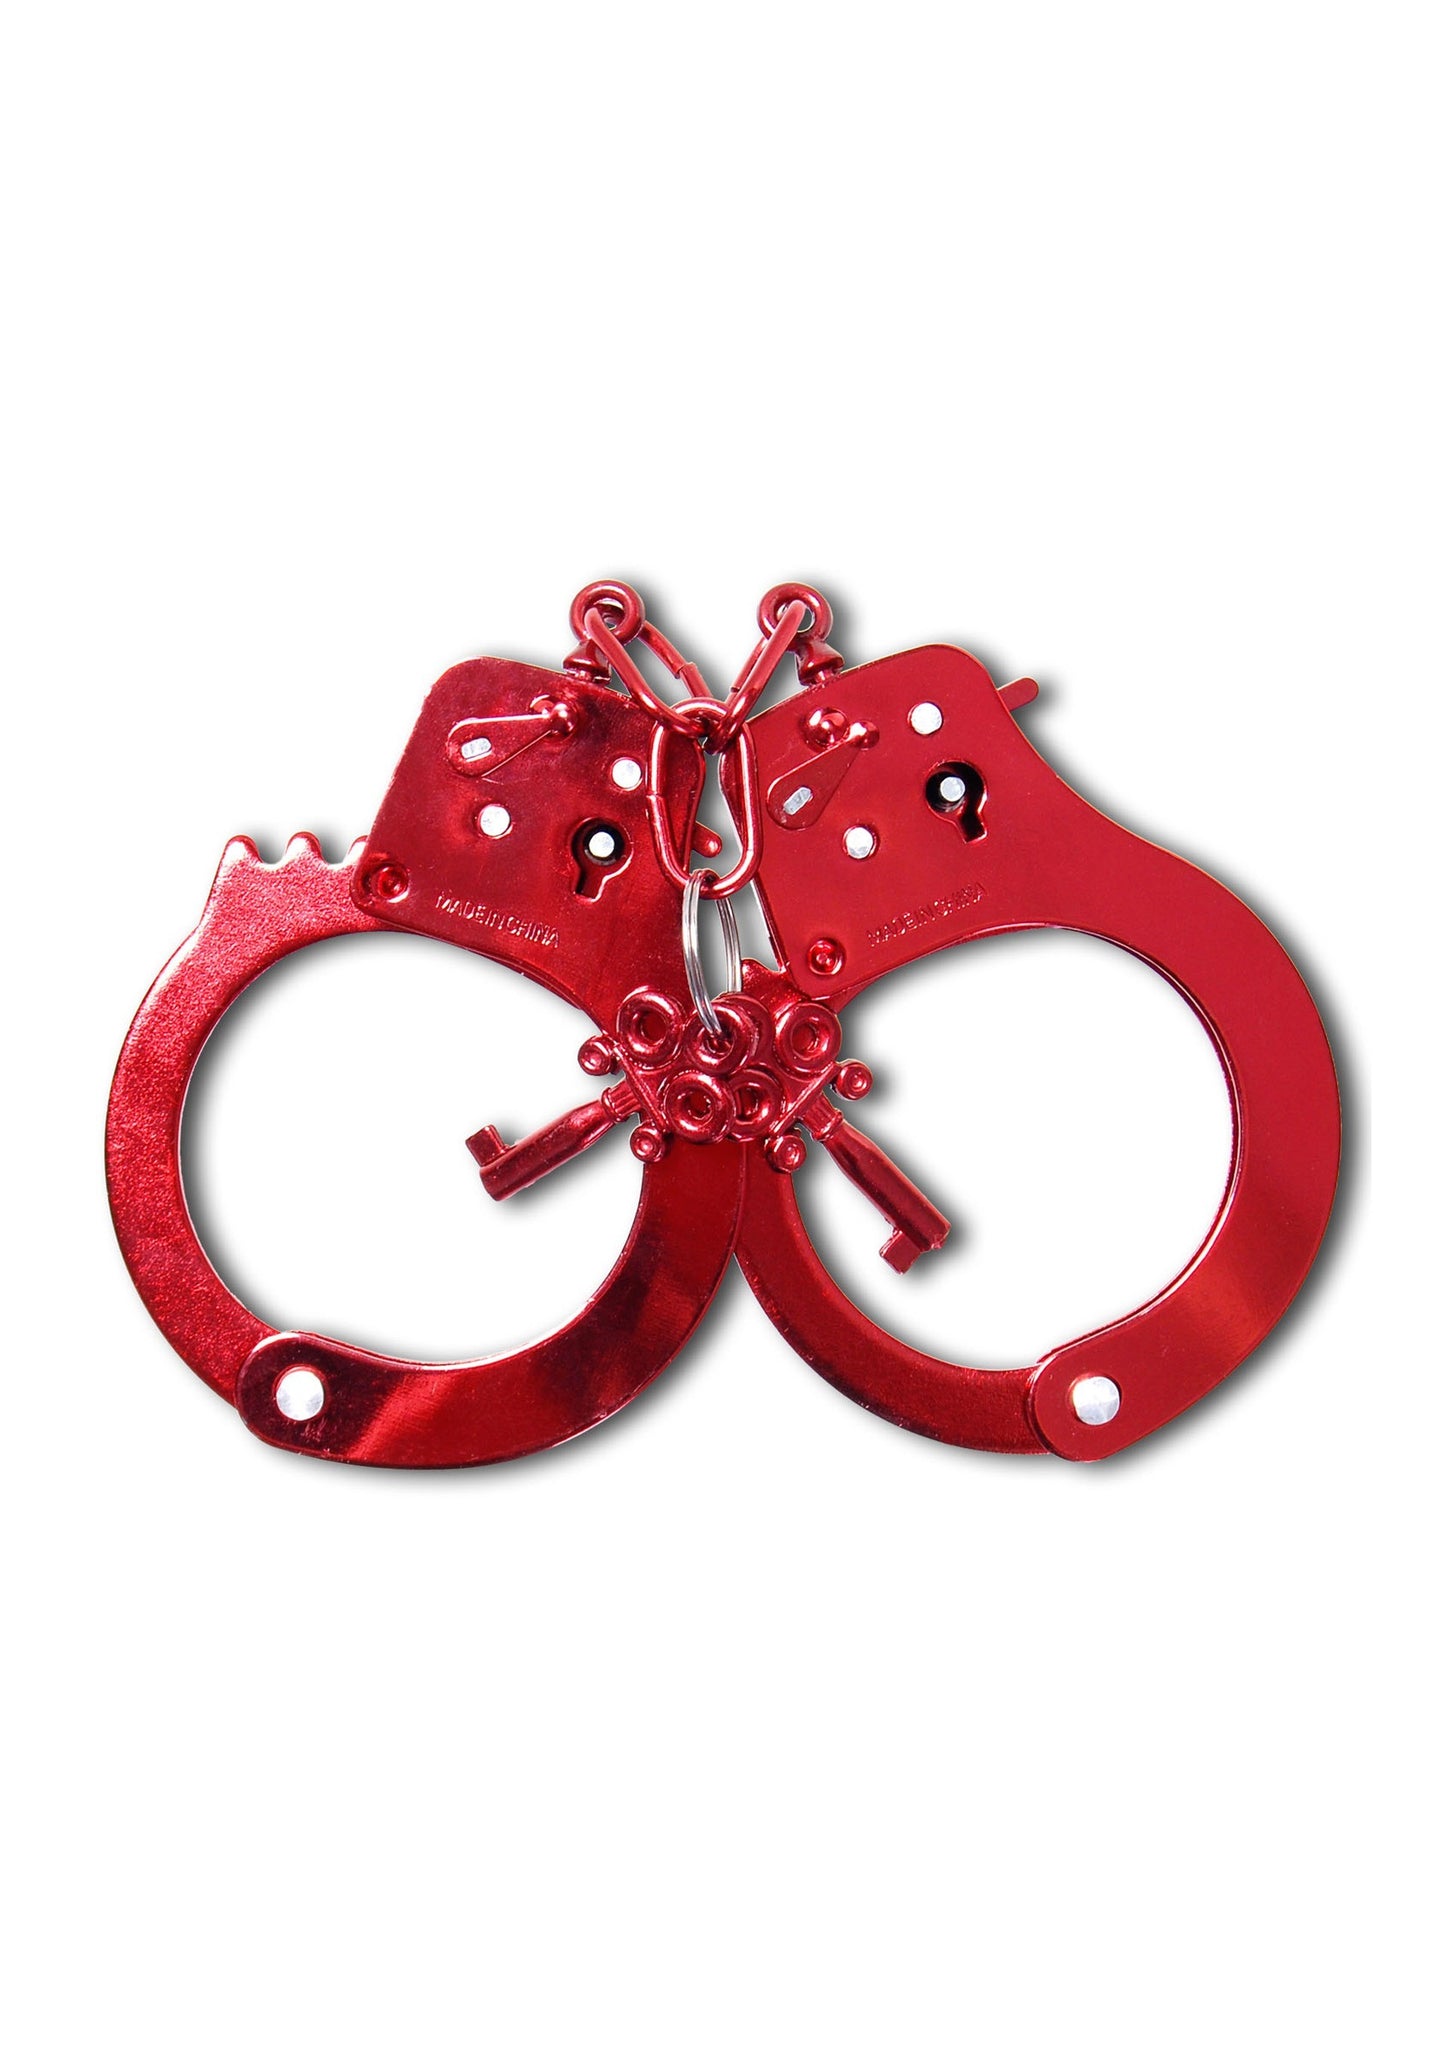 manette sexy polsini in metallo vere bondage fetish acciaio rosso gioco erotico